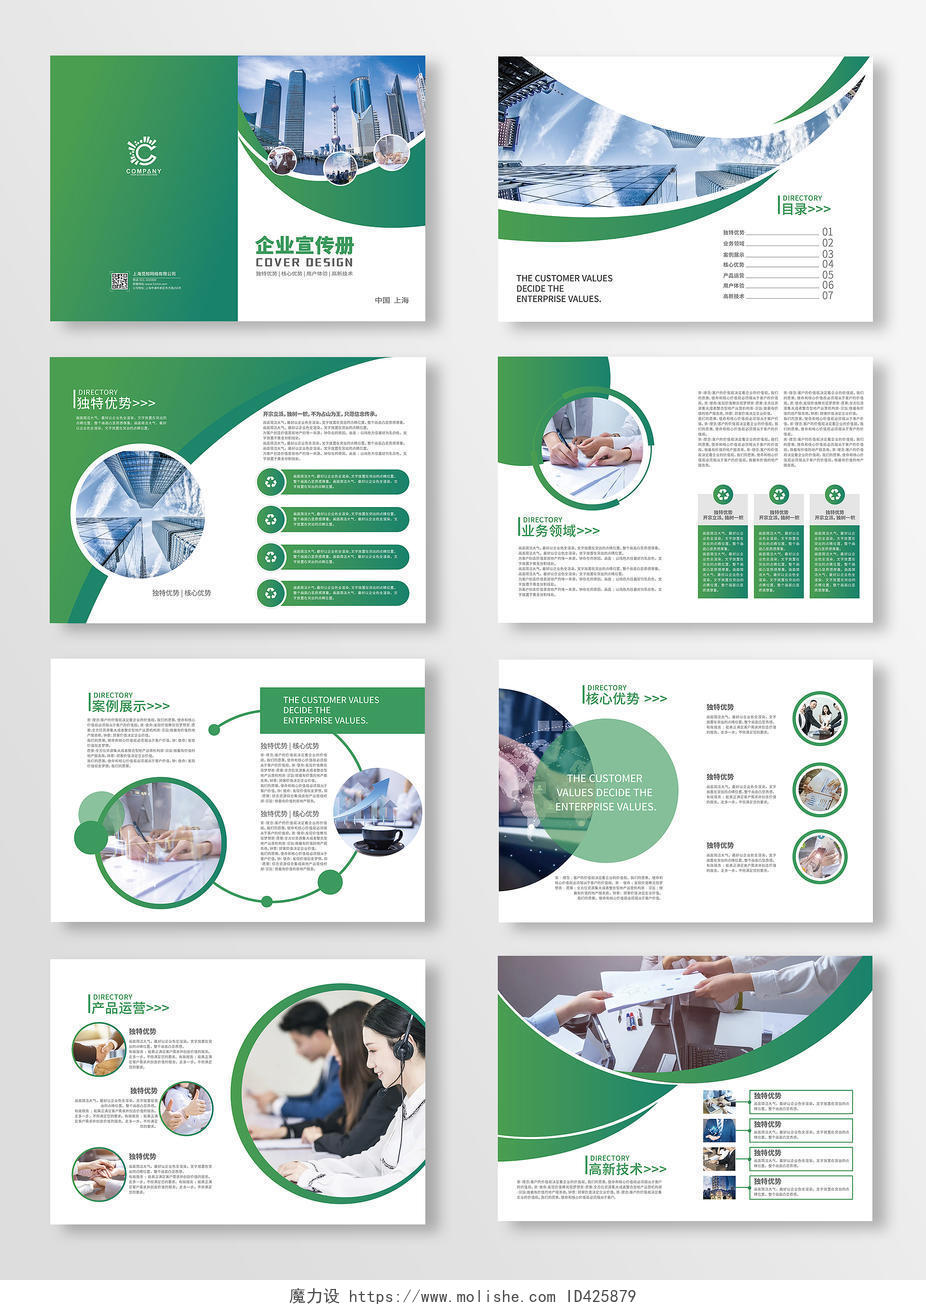 绿色几何企业宣传册公司画册企业画册绿色画册企业文化宣传画册企业公司画册整套